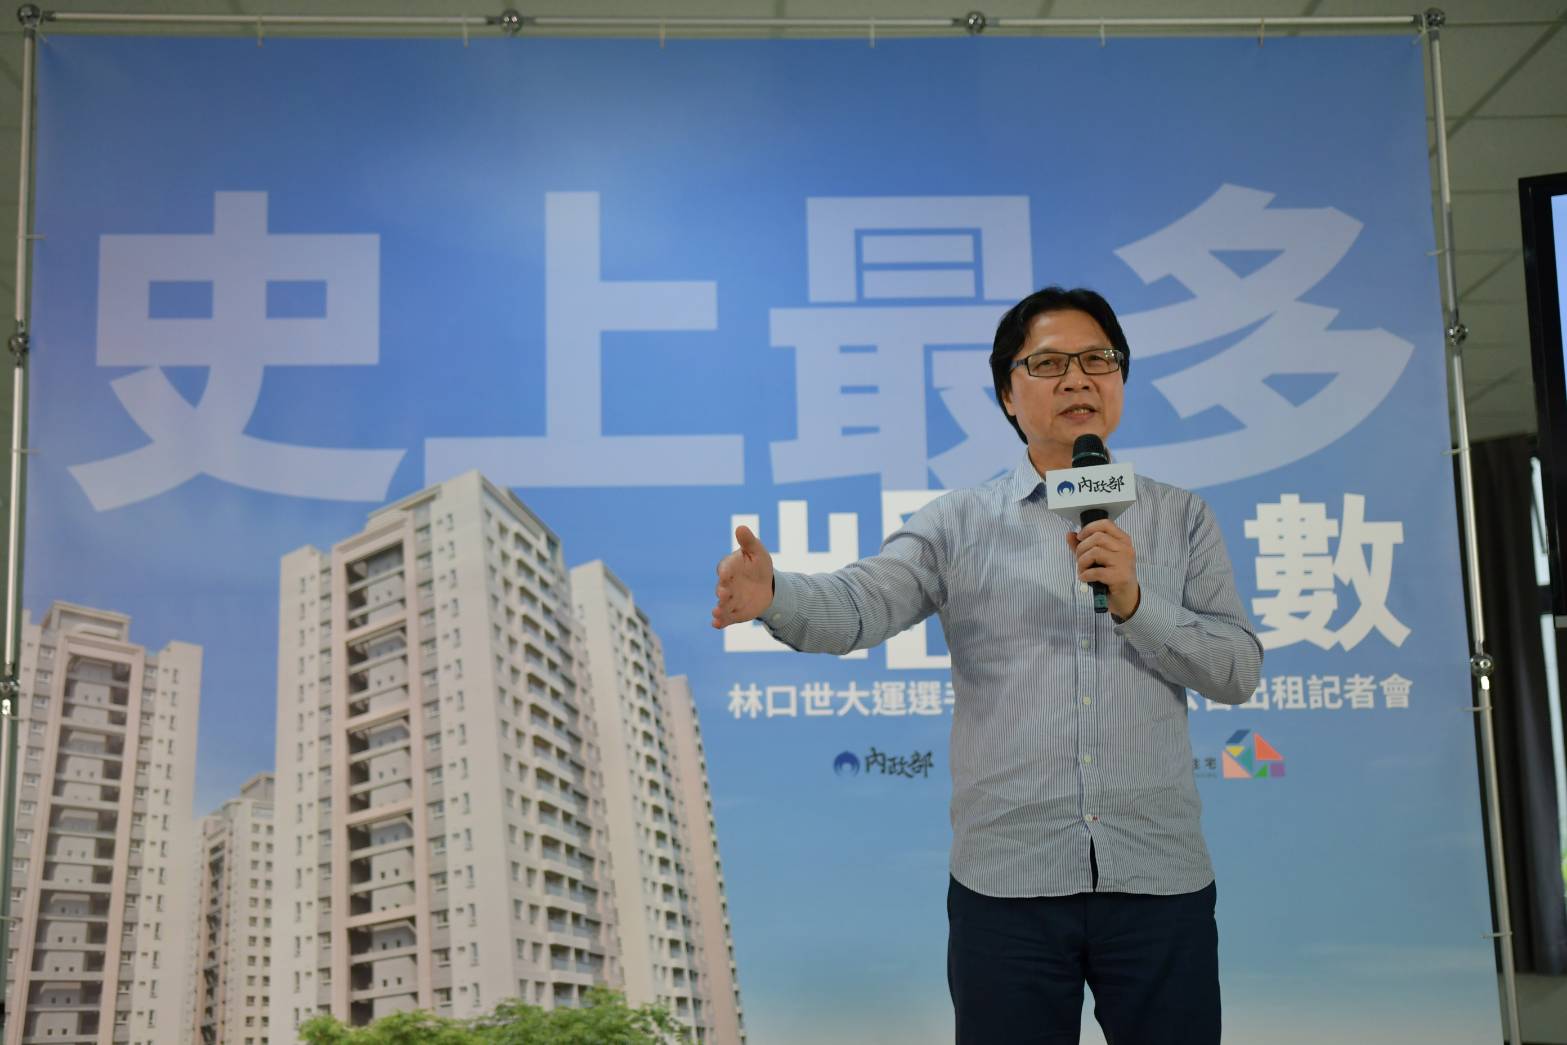 葉俊榮：林口世大運選手村社會住宅住得起、住得好 要讓租戶喜歡回家